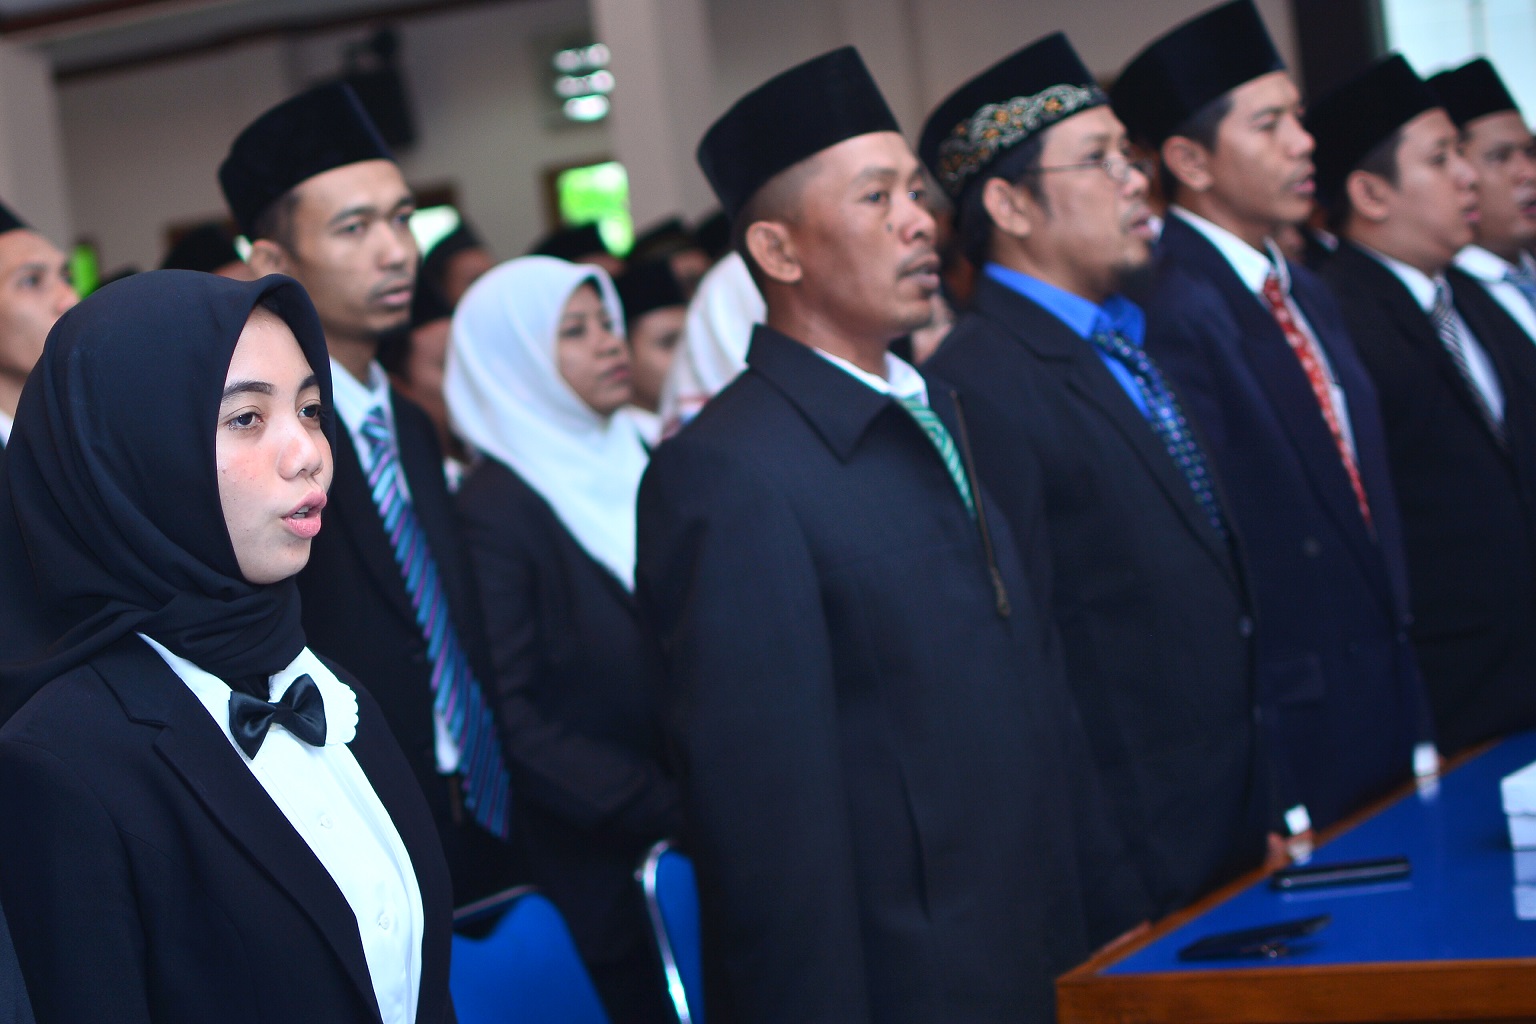 Jelang Pilkada 2018, Ketua KPU Lamongan Lantik 135 PPK